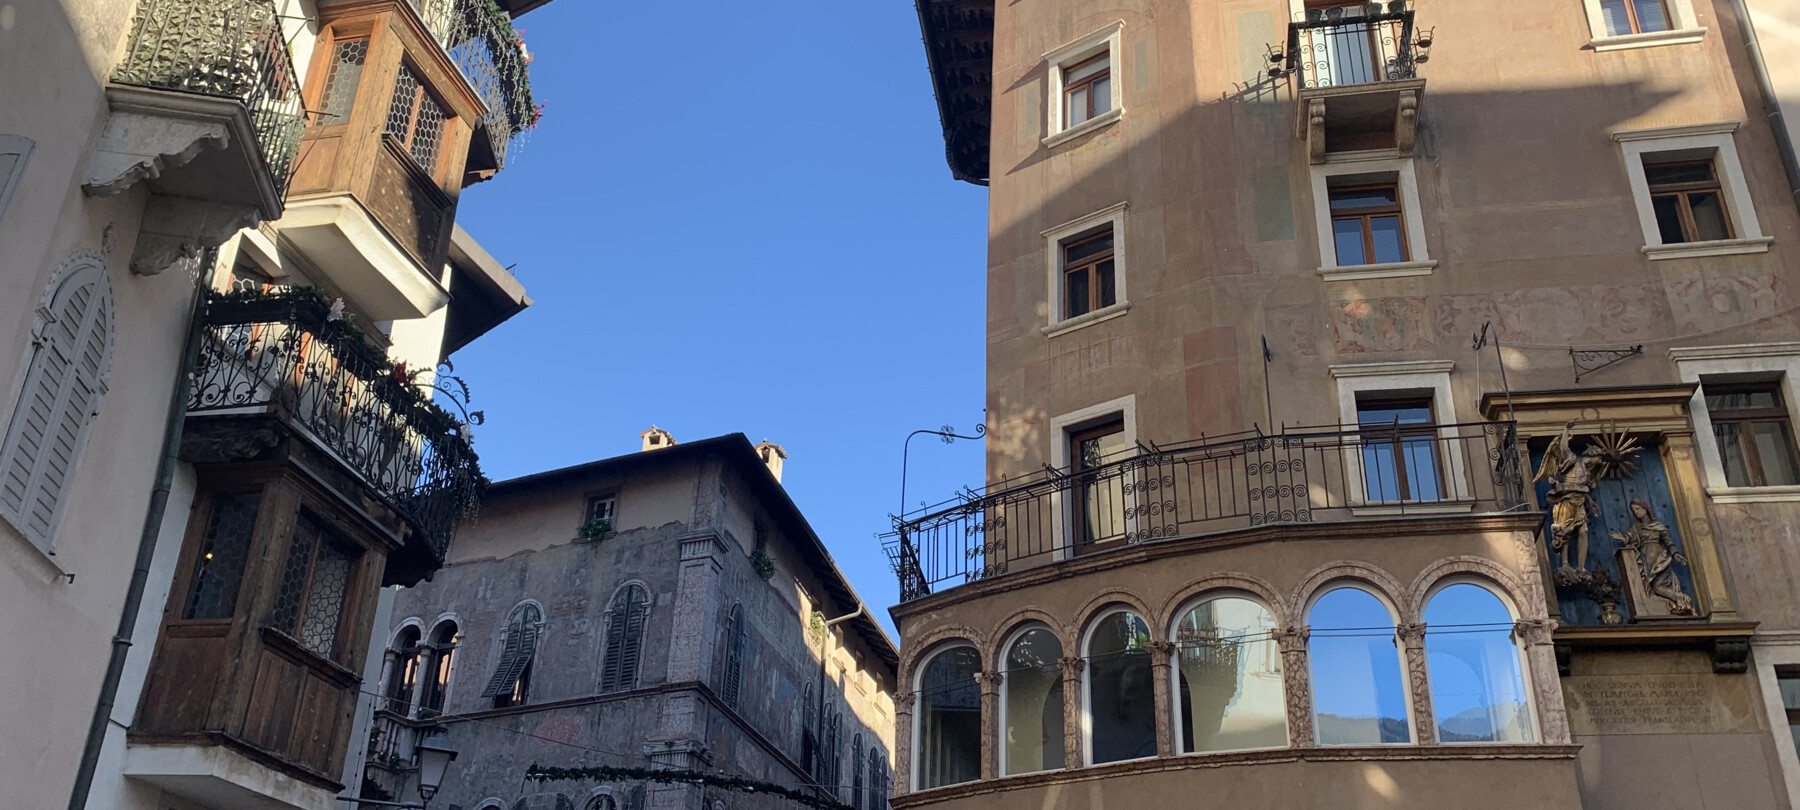 Co si nesmíte nechat ujít: centrum města Trento podle místní módy